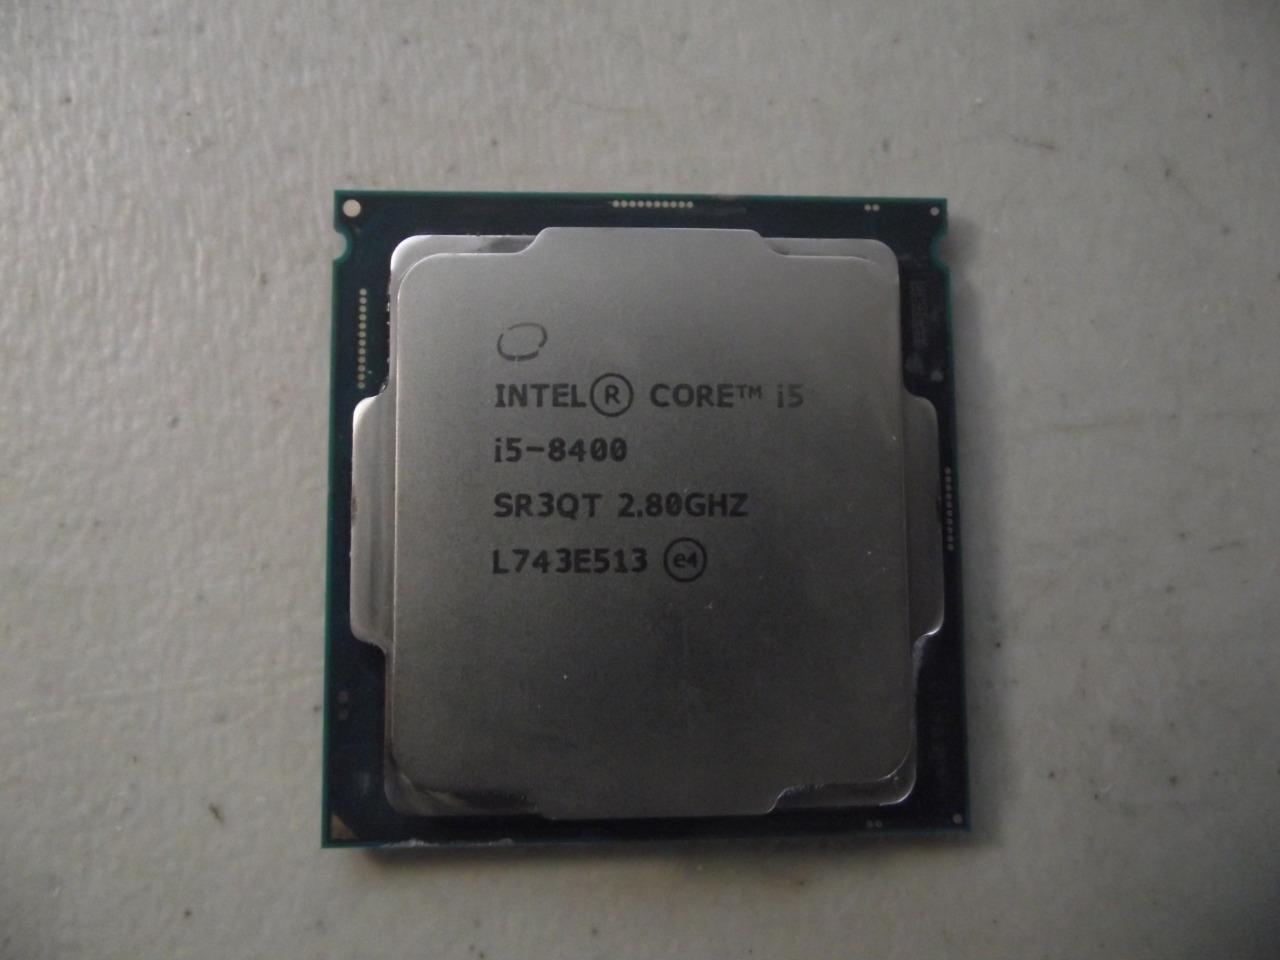 Intel Core i5-8400 2.80GHz 6-Core CPU Processor, SR3QT, LGA1151